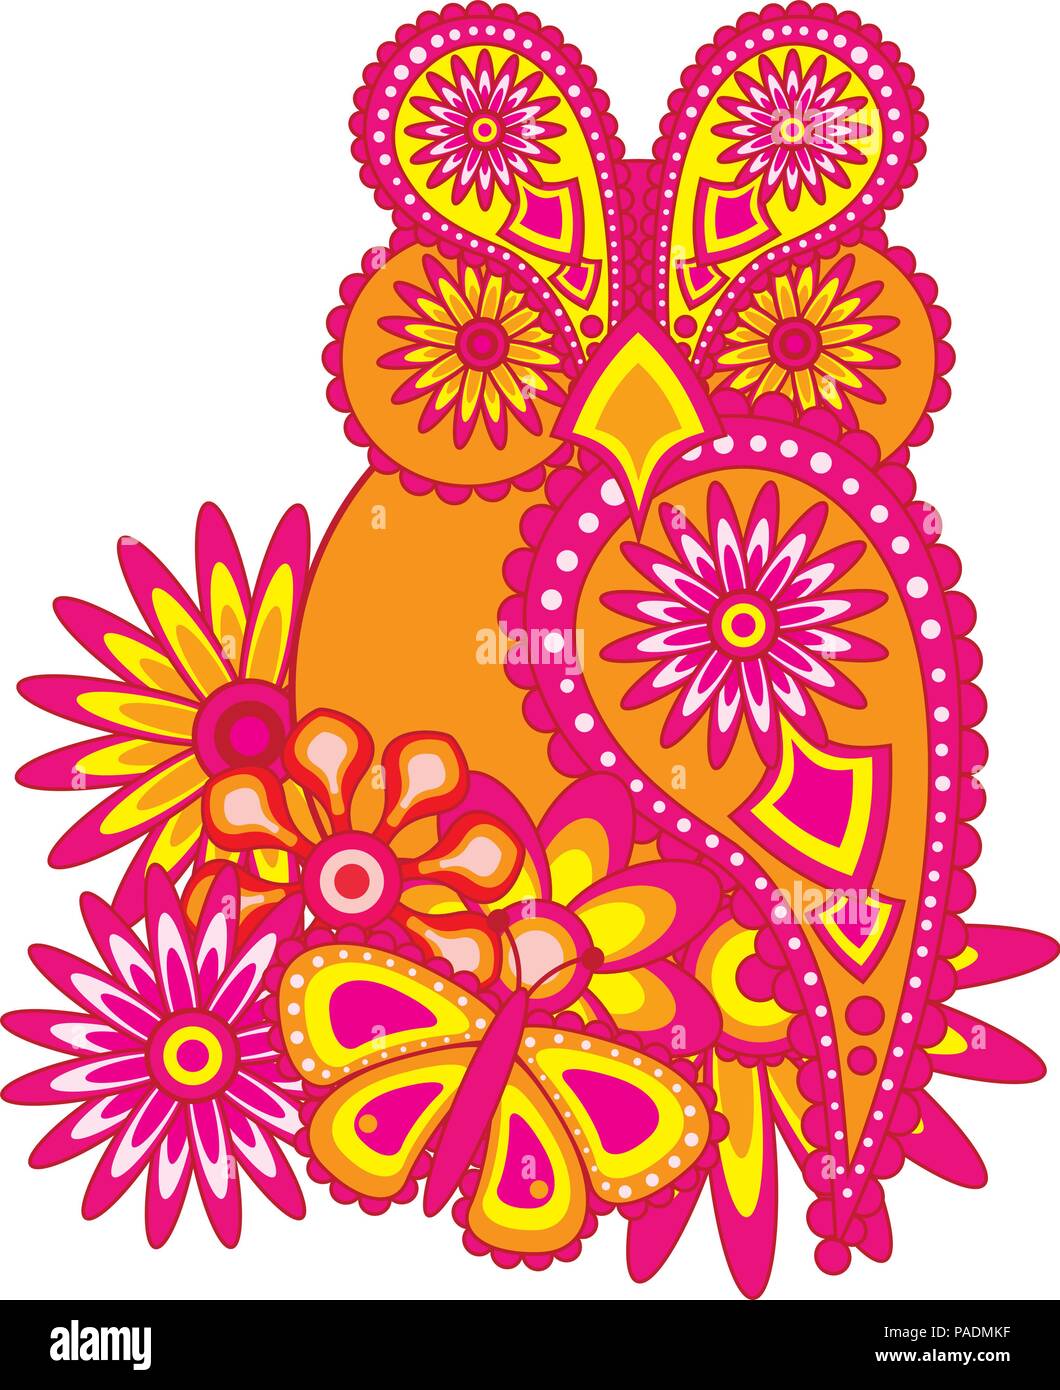 Paisley motivo floreale abstract owl fiori e farfalle Illustrazione a colori Illustrazione Vettoriale